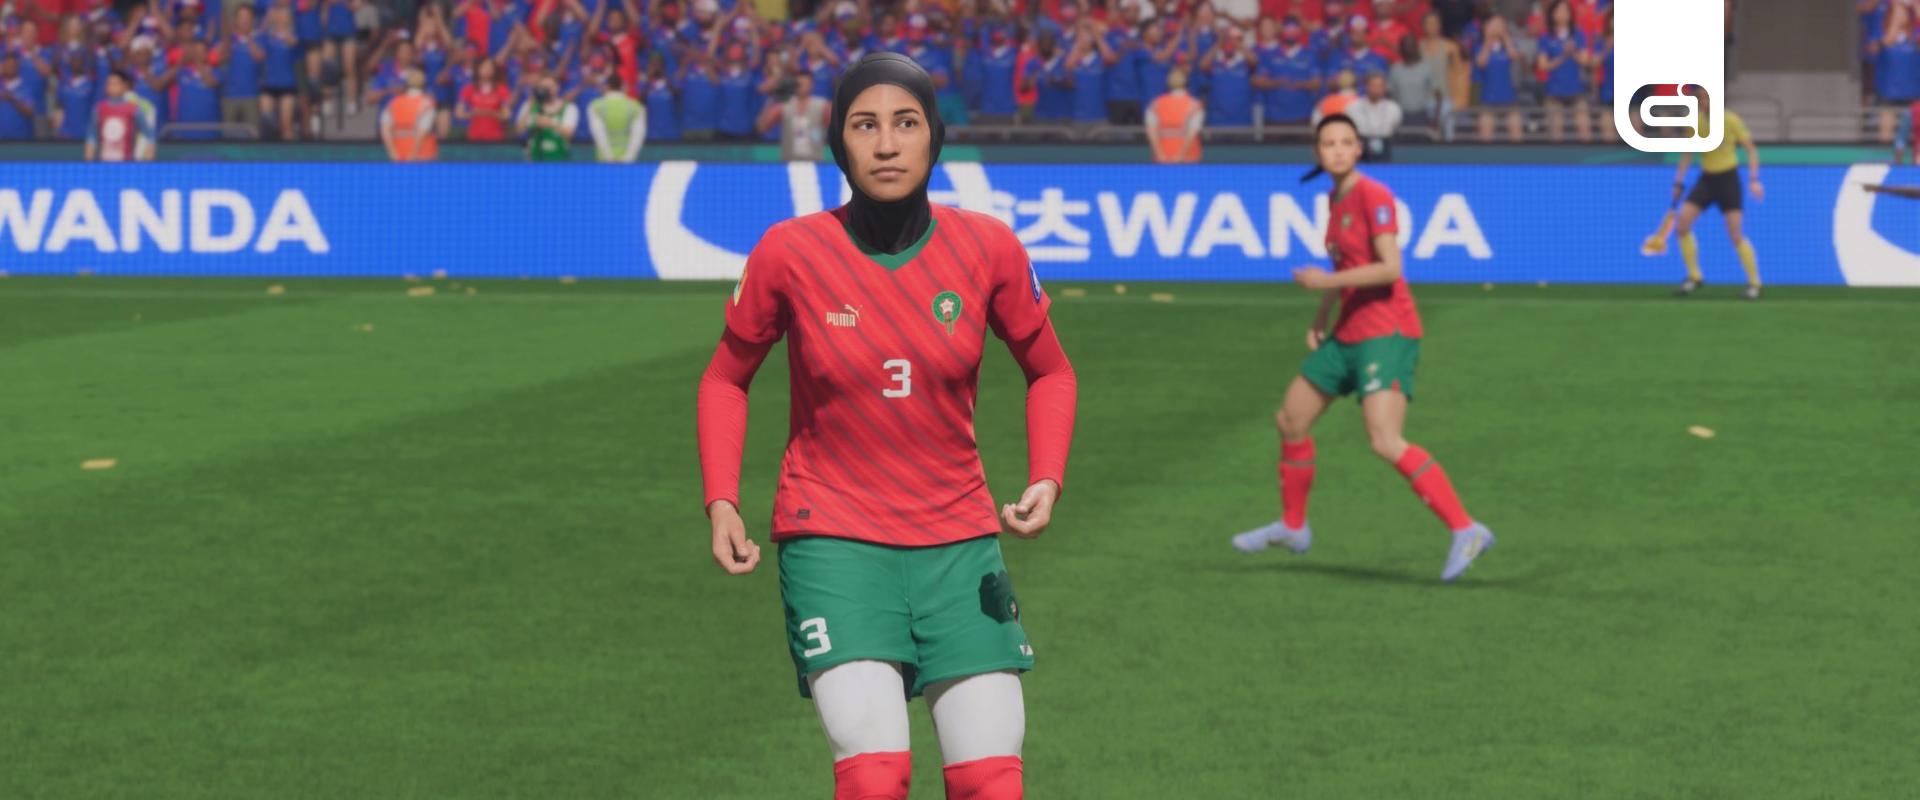 A FIFA 23-ban a sorozat történetében először szerepel egy hidzsábot viselő játékos